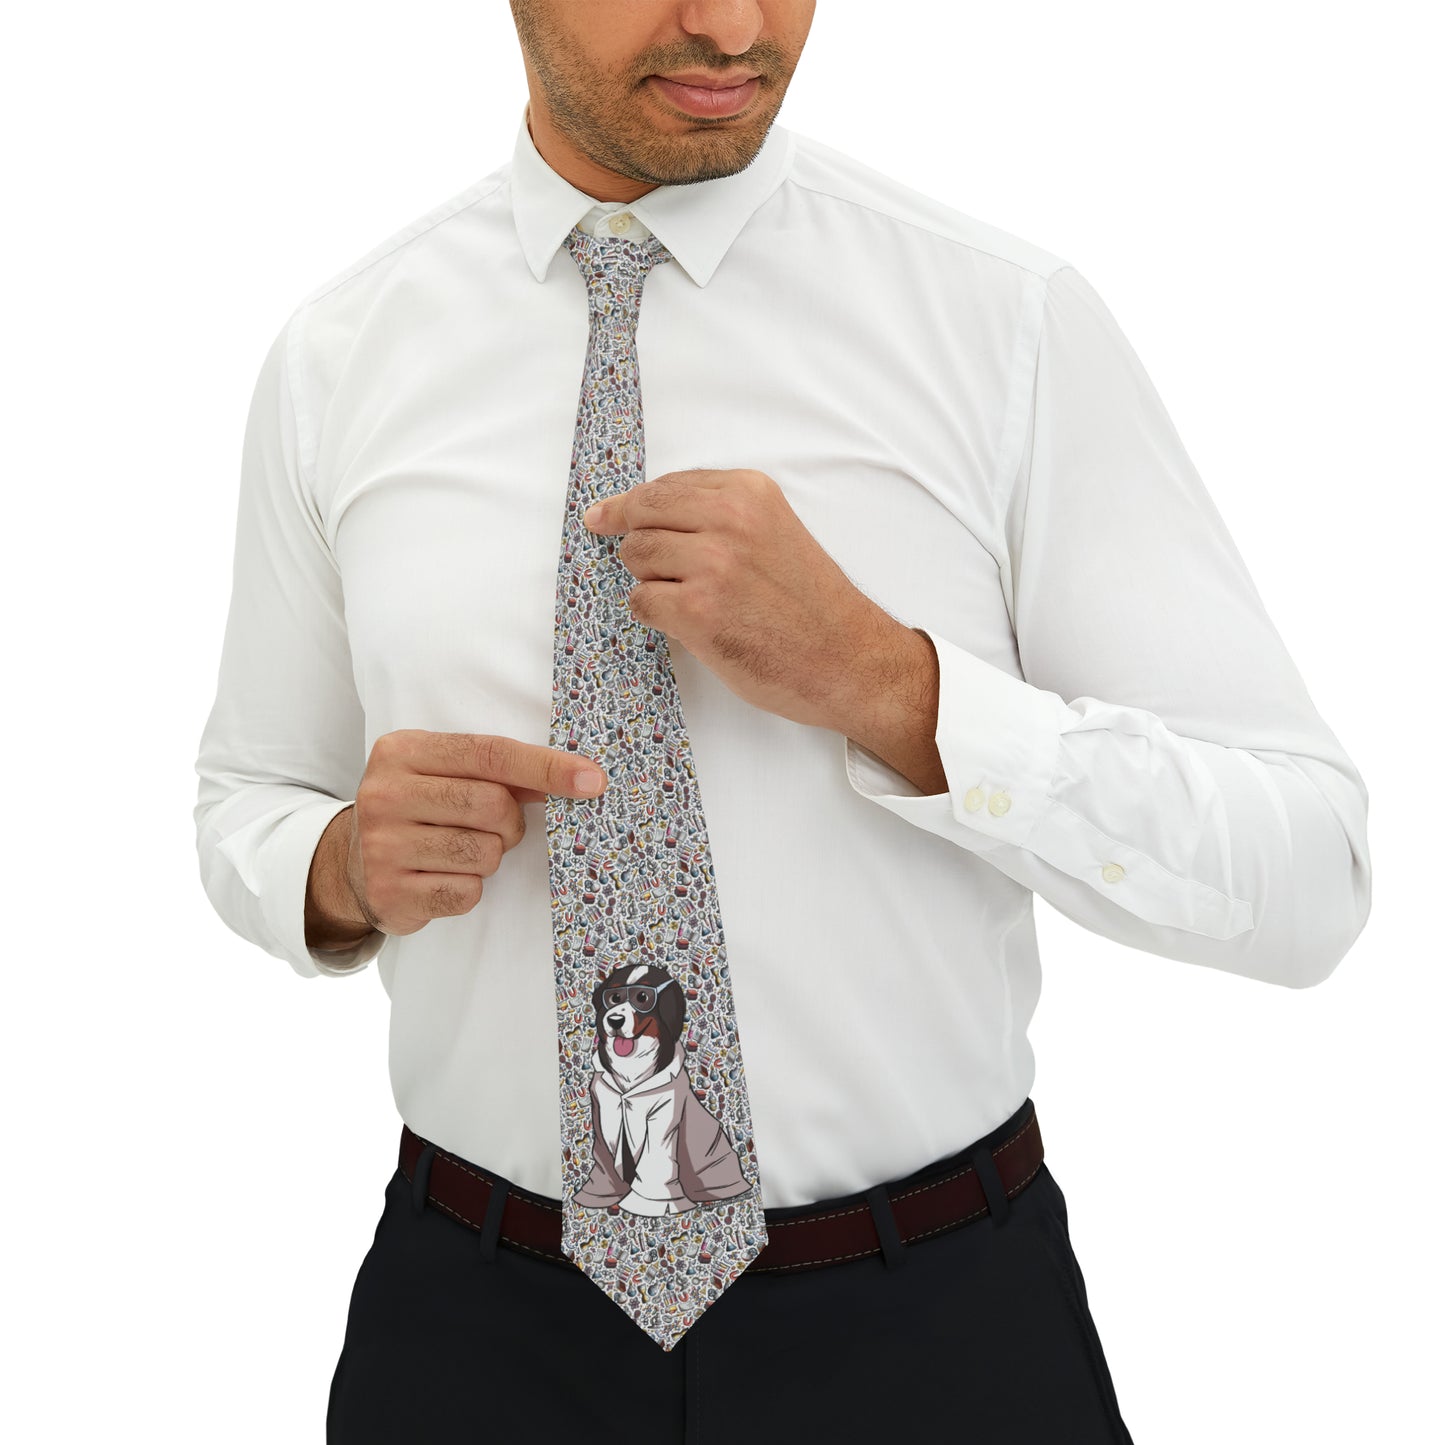 The Bunsen Necktie